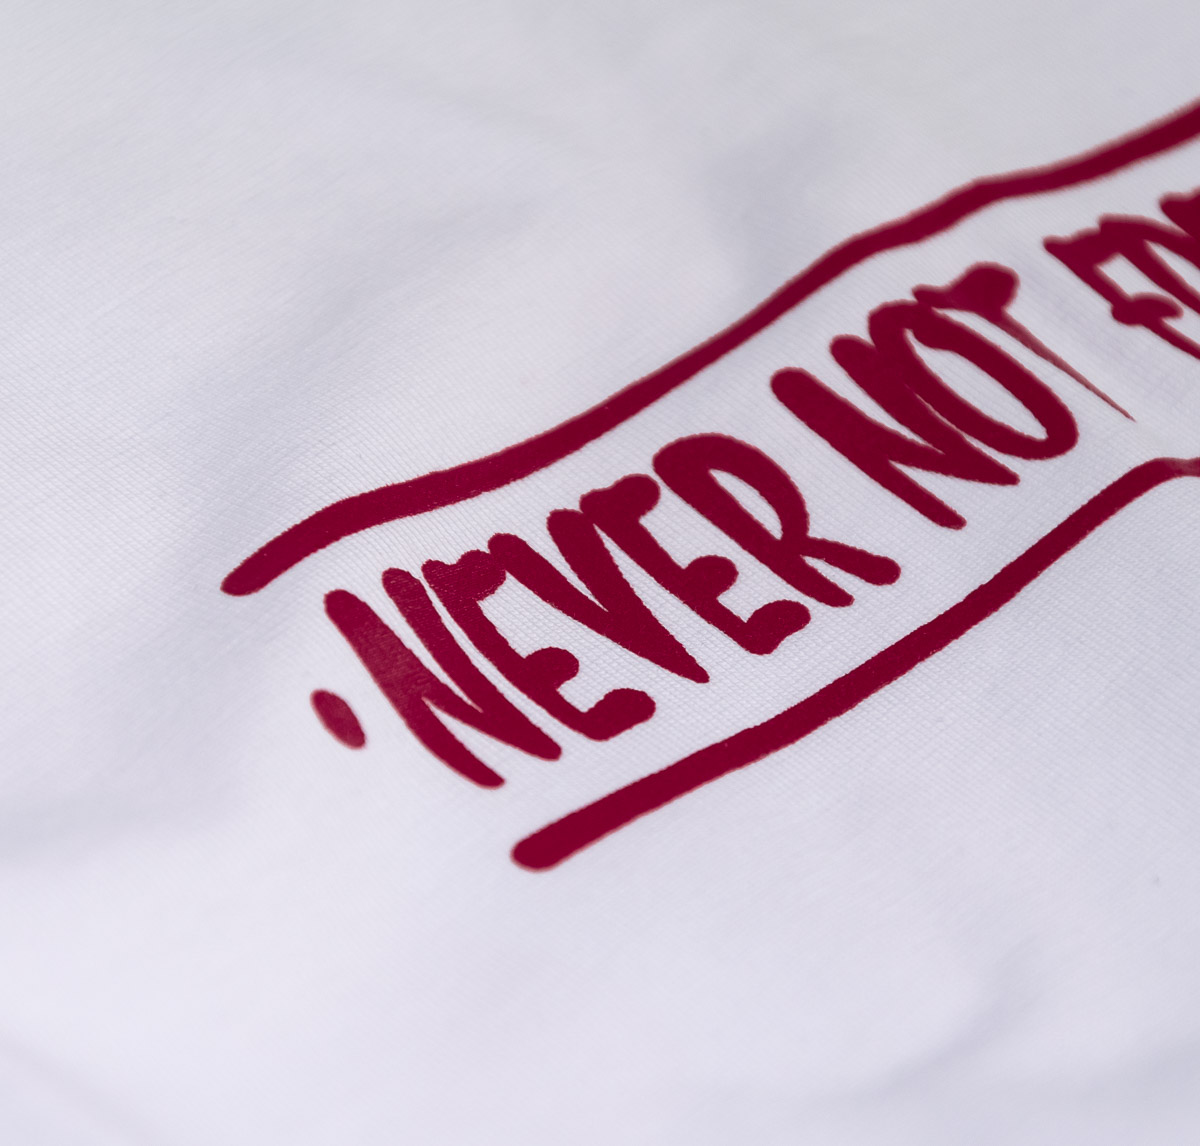 NOMAD Never Not Fresh Shirt - Boogie - White detail